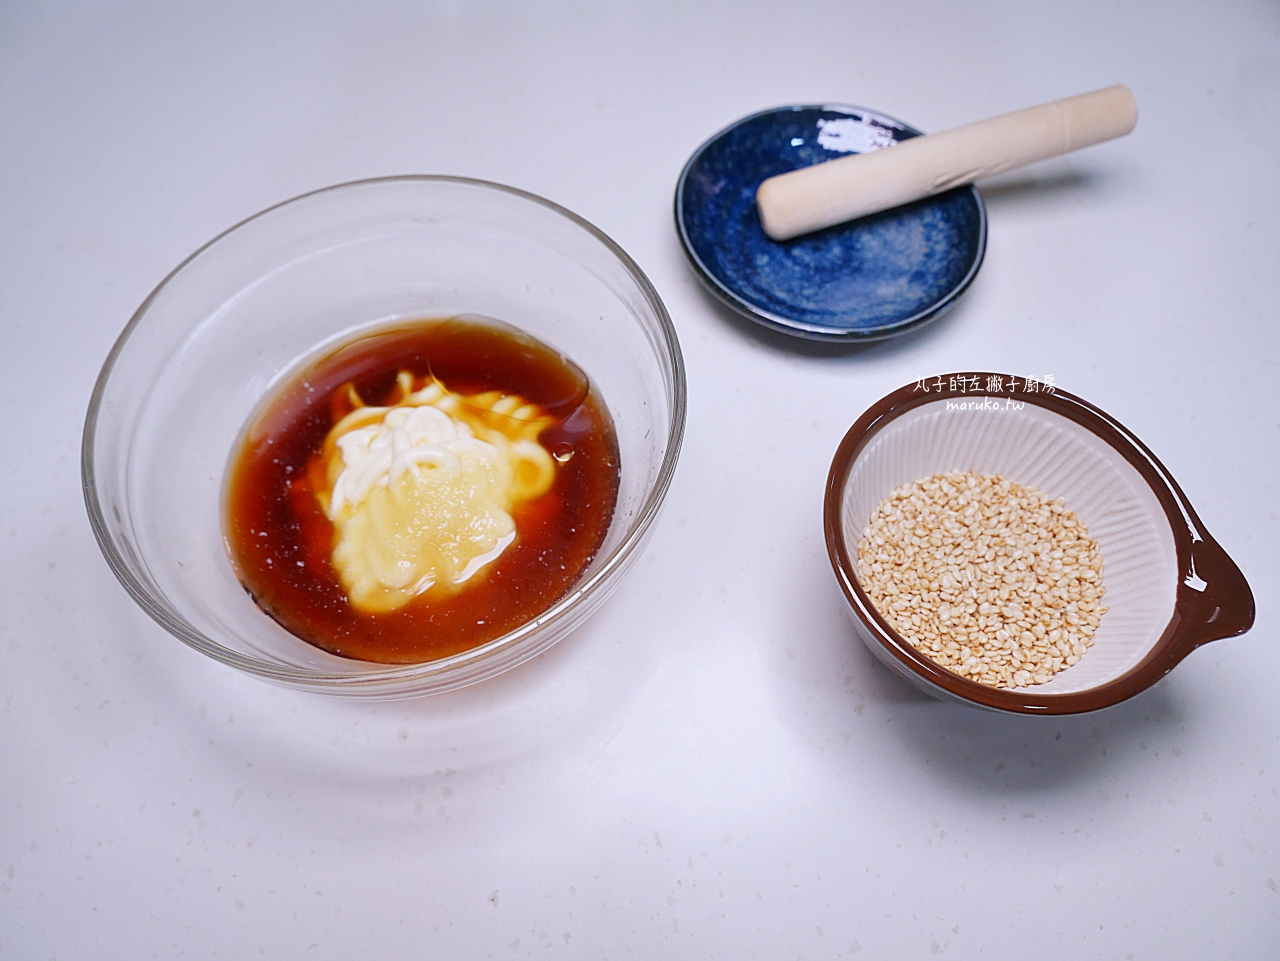 【食譜】胡麻豆腐/免開火/五分鐘輕鬆做日式胡麻醬拌麵拌生菜沙拉簡單做 @Maruko與美食有個約會